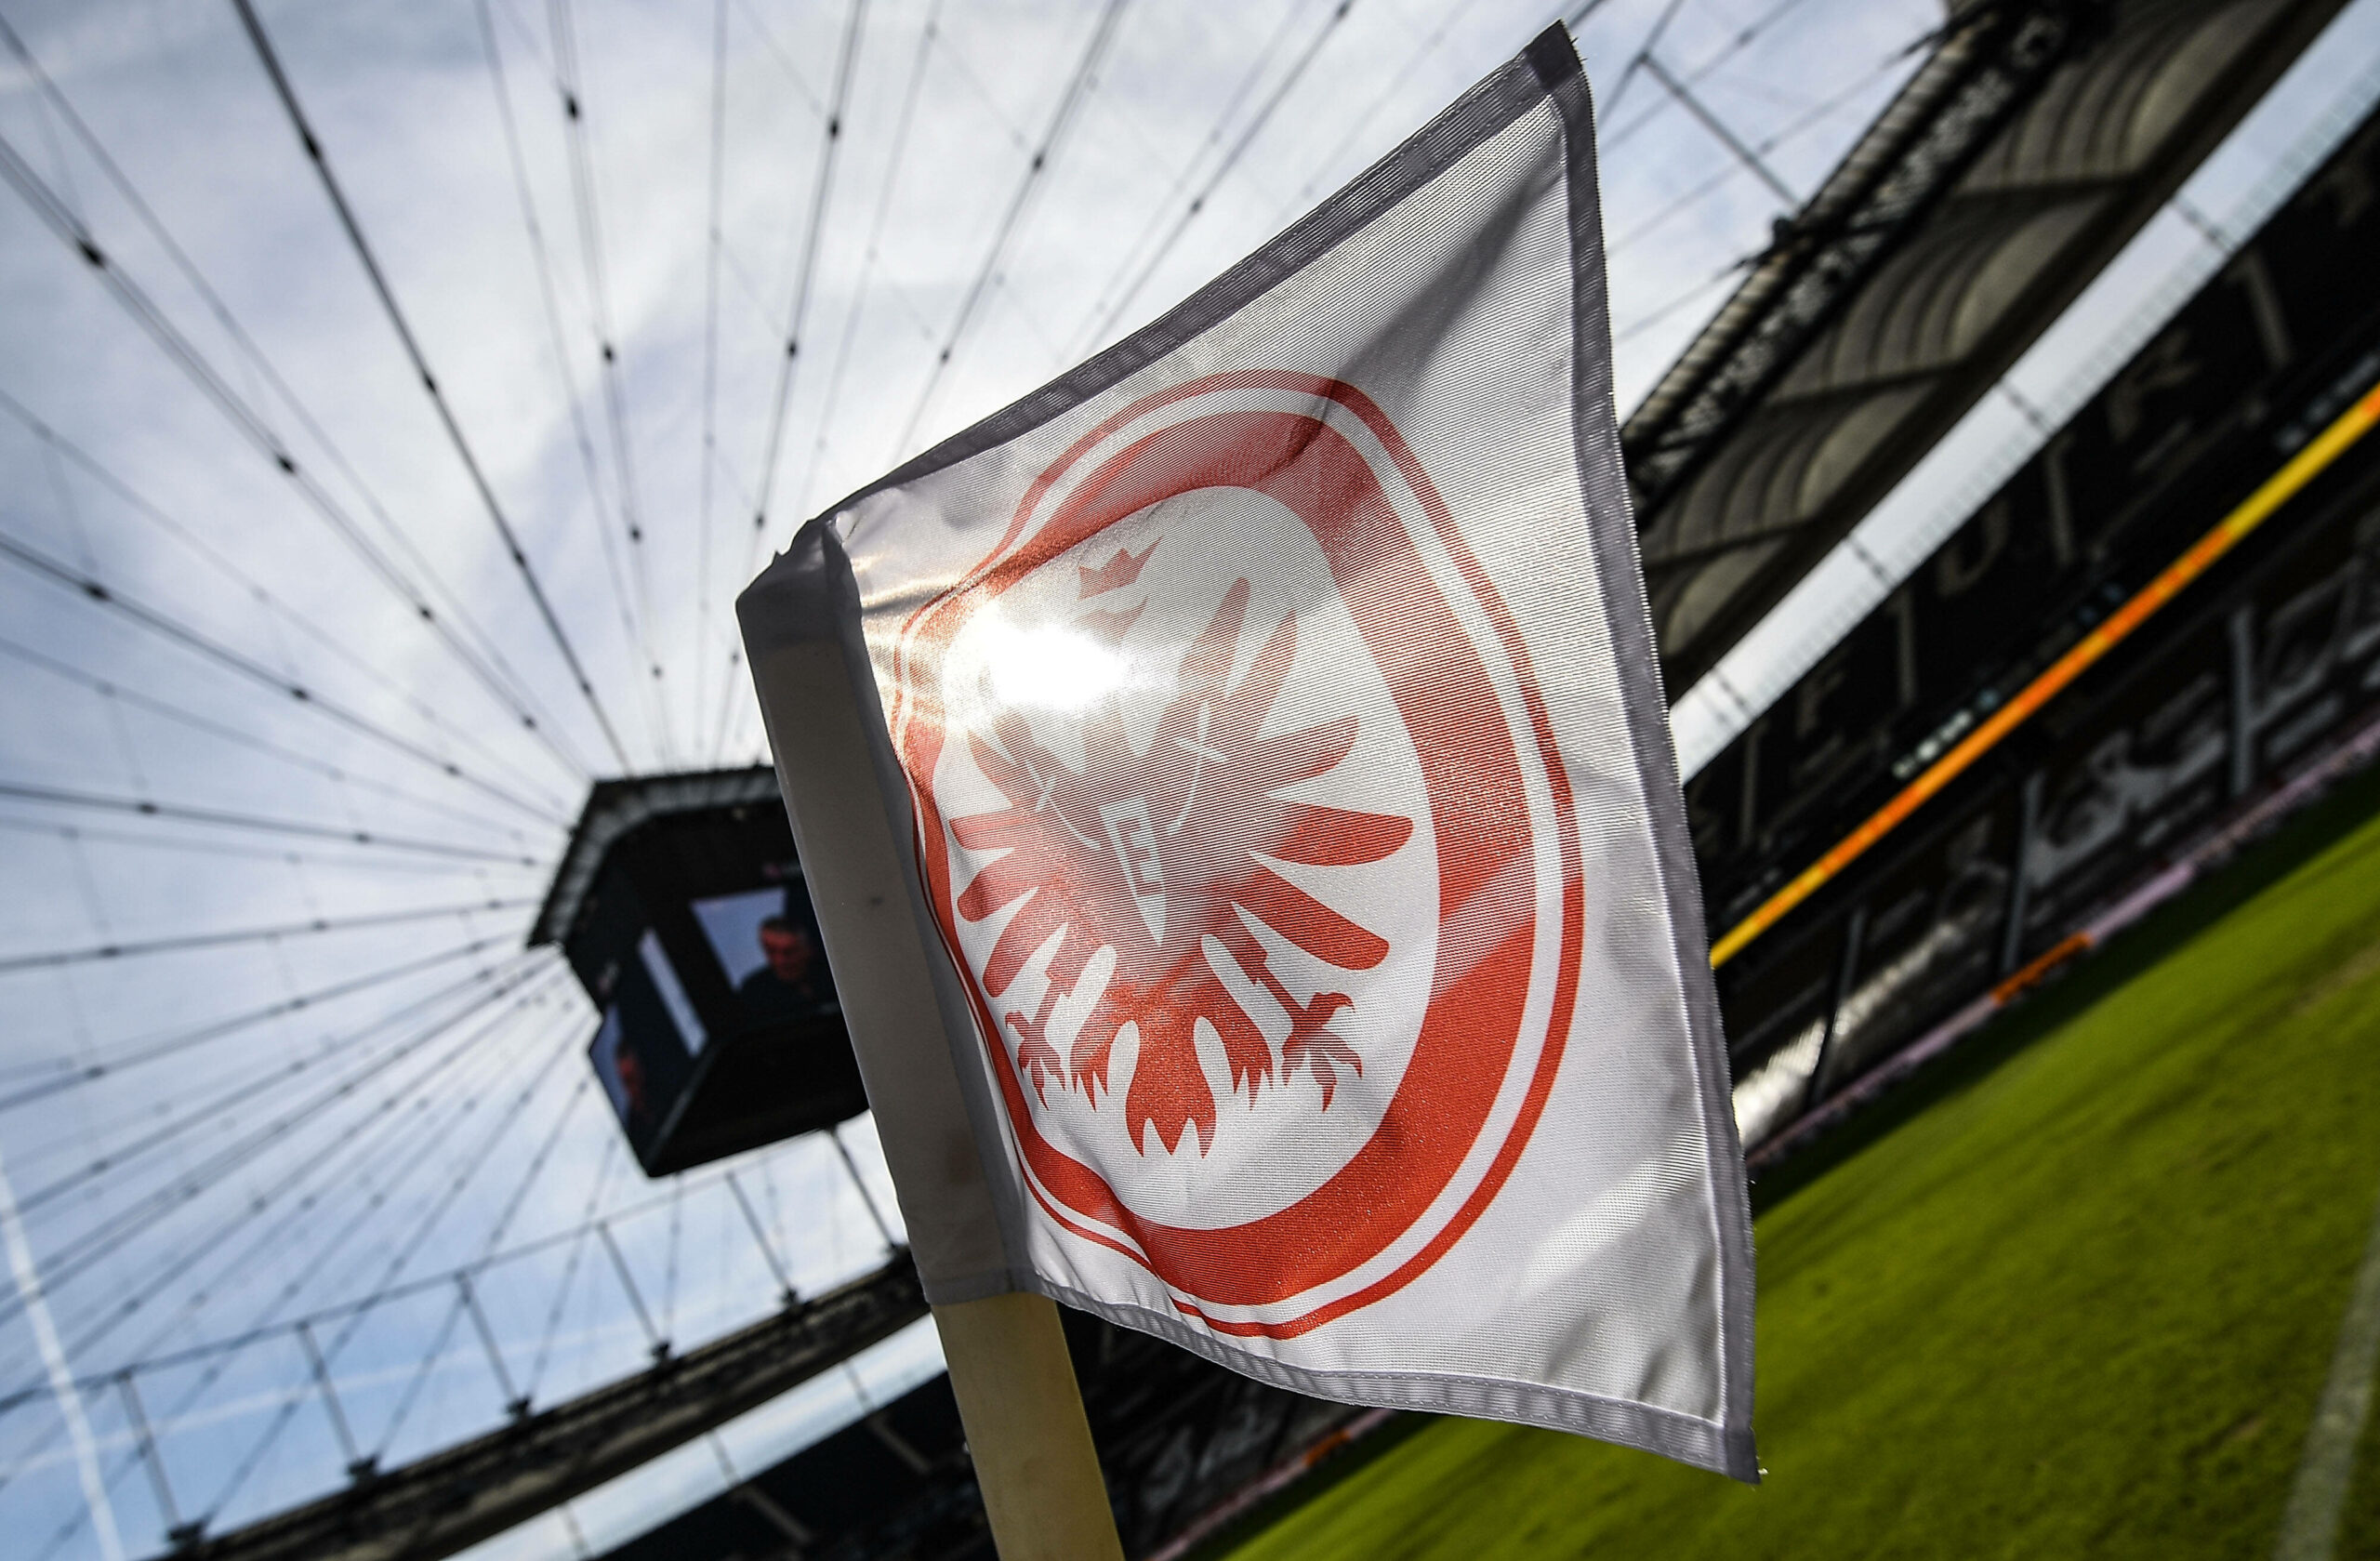 Trotz Verlust: Eintracht Frankfurt nicht auf Spielerverkäufe angewiesen